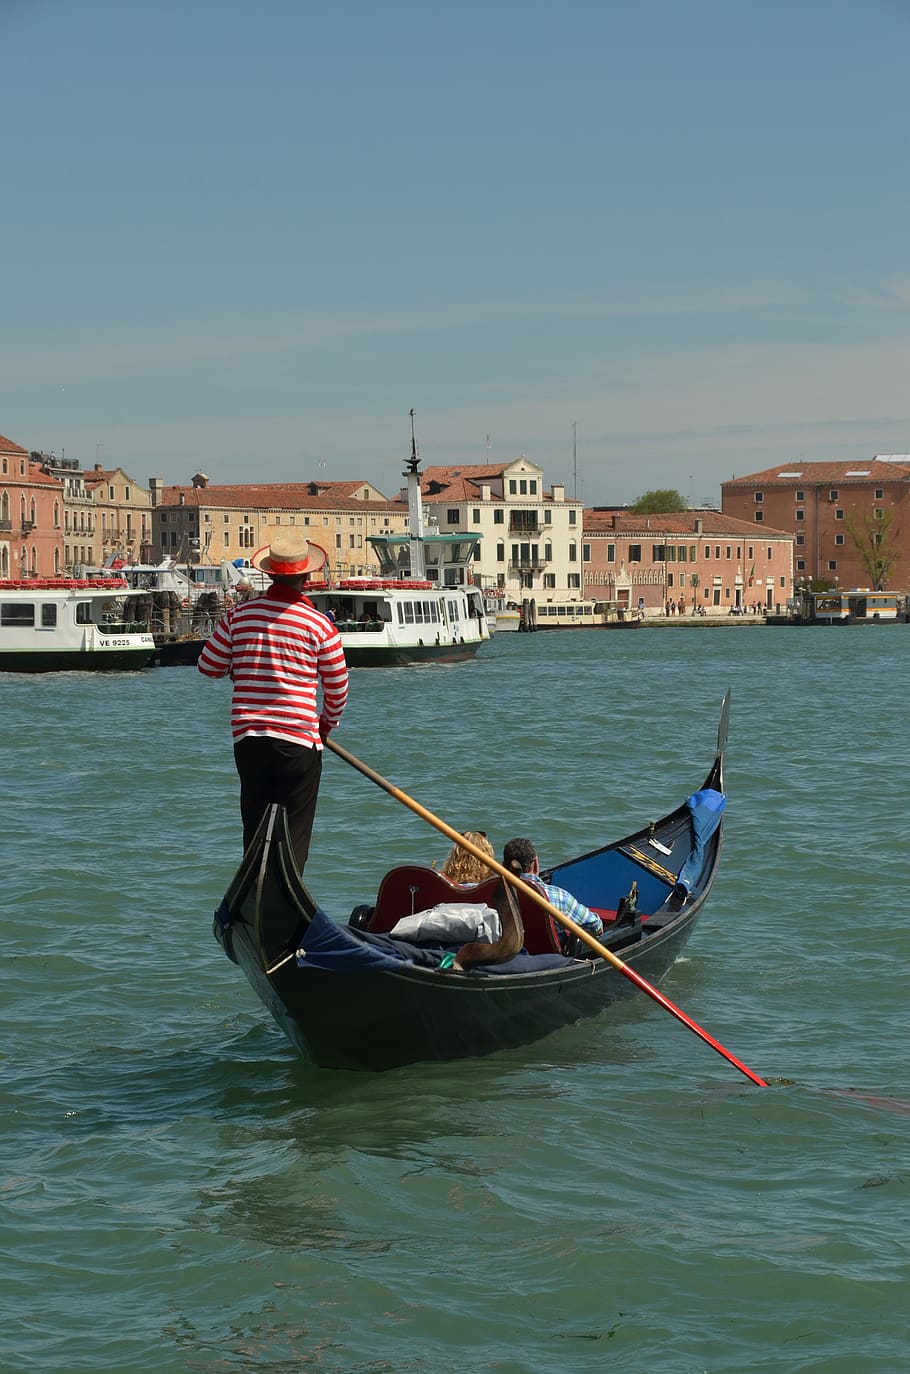 italy, venice, gondola, gondolier, boat, boating, water, lagoon, city, holiday